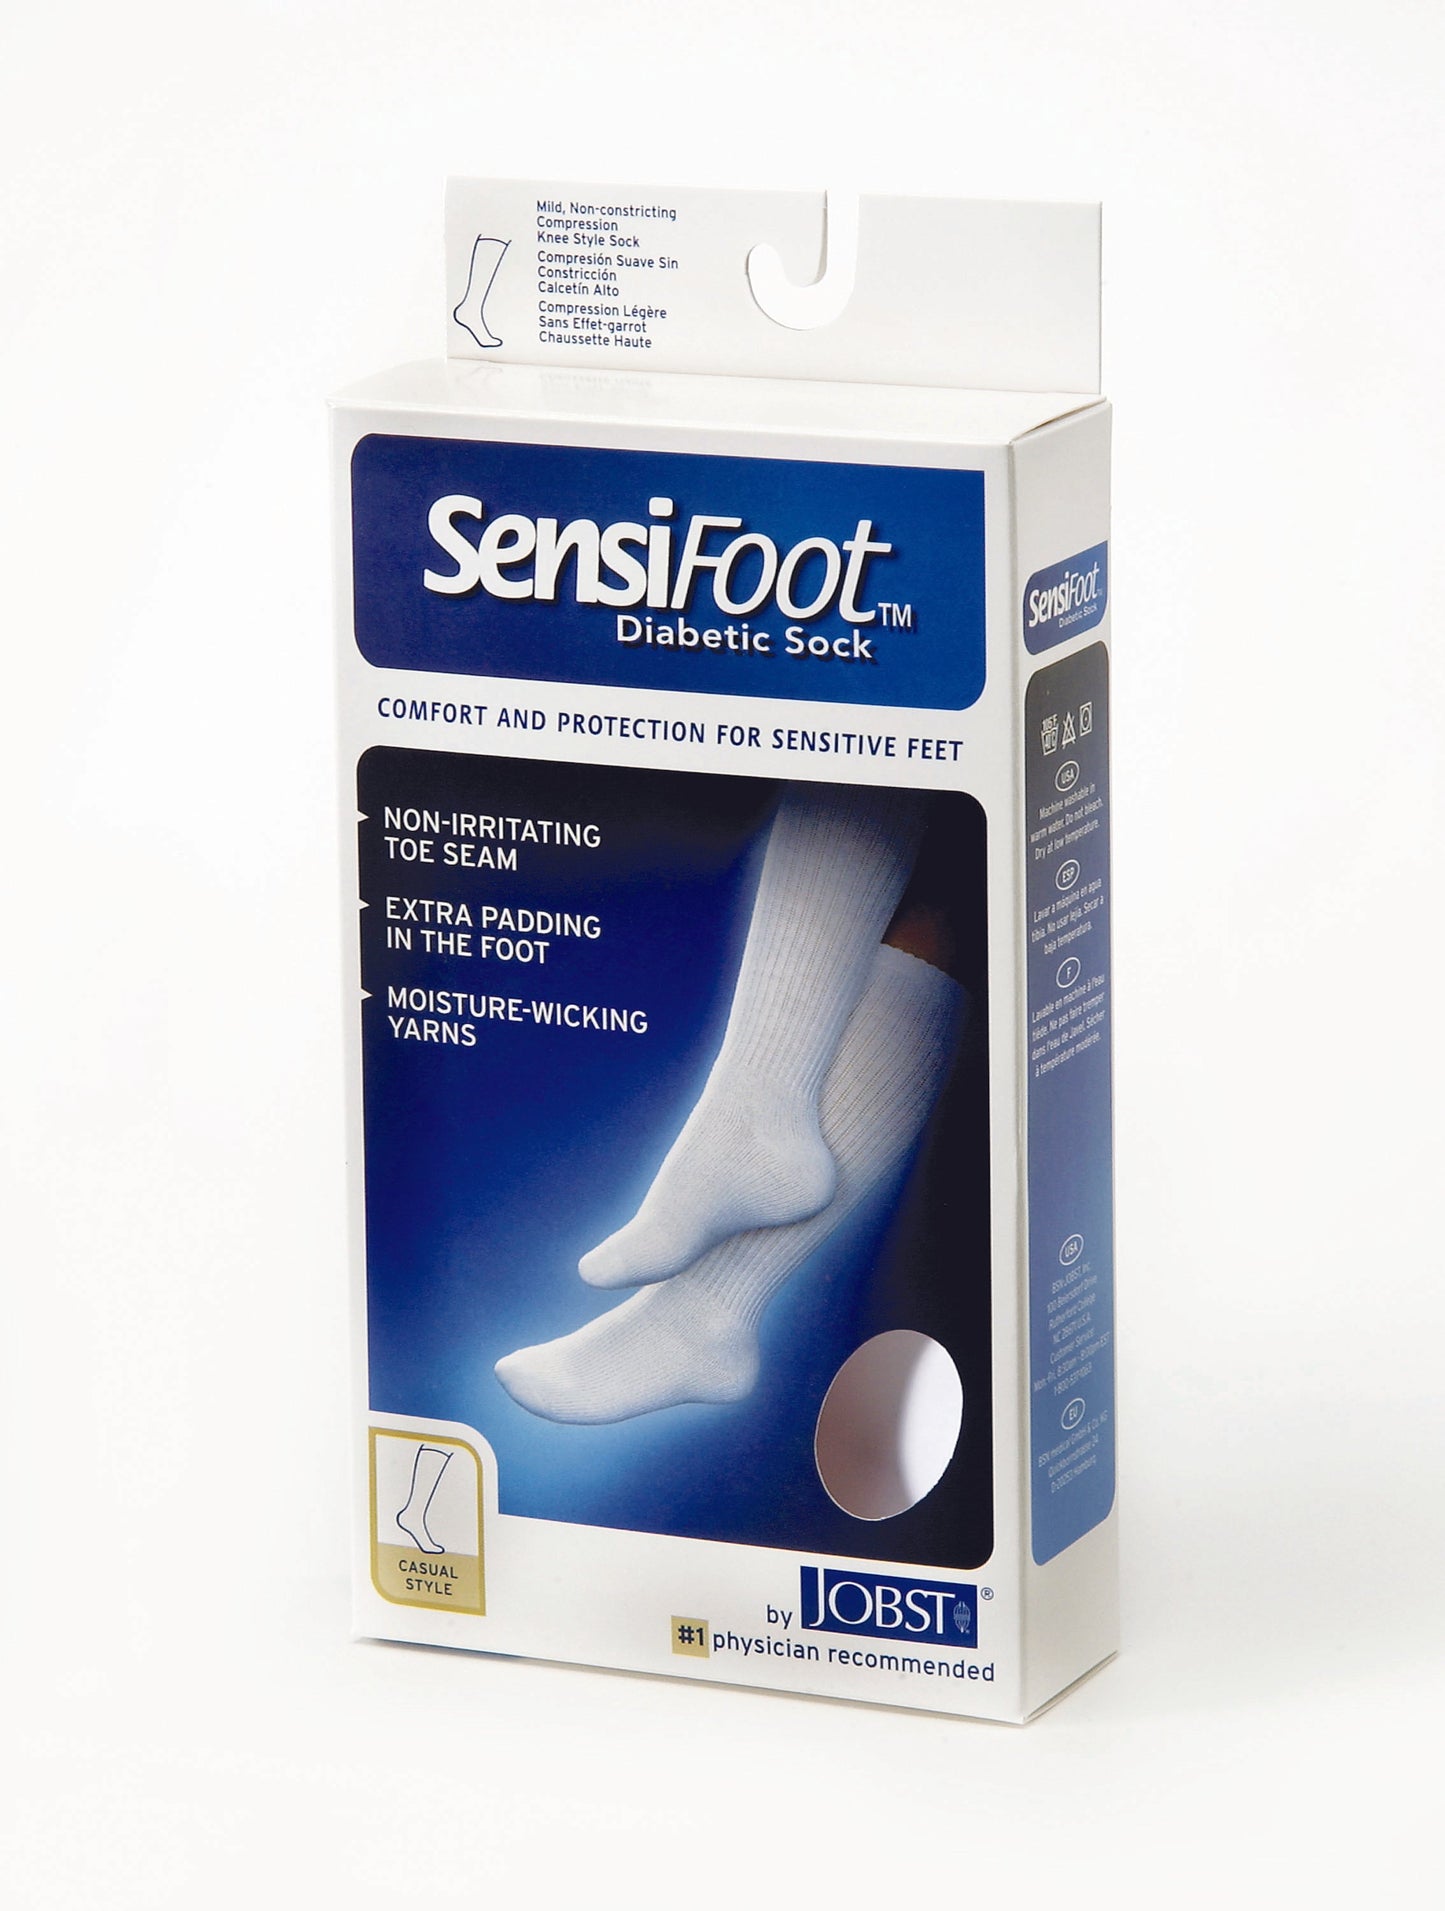 JOBST SensiFoot Diabetic Compression Socks 8-15 mmHg Crew